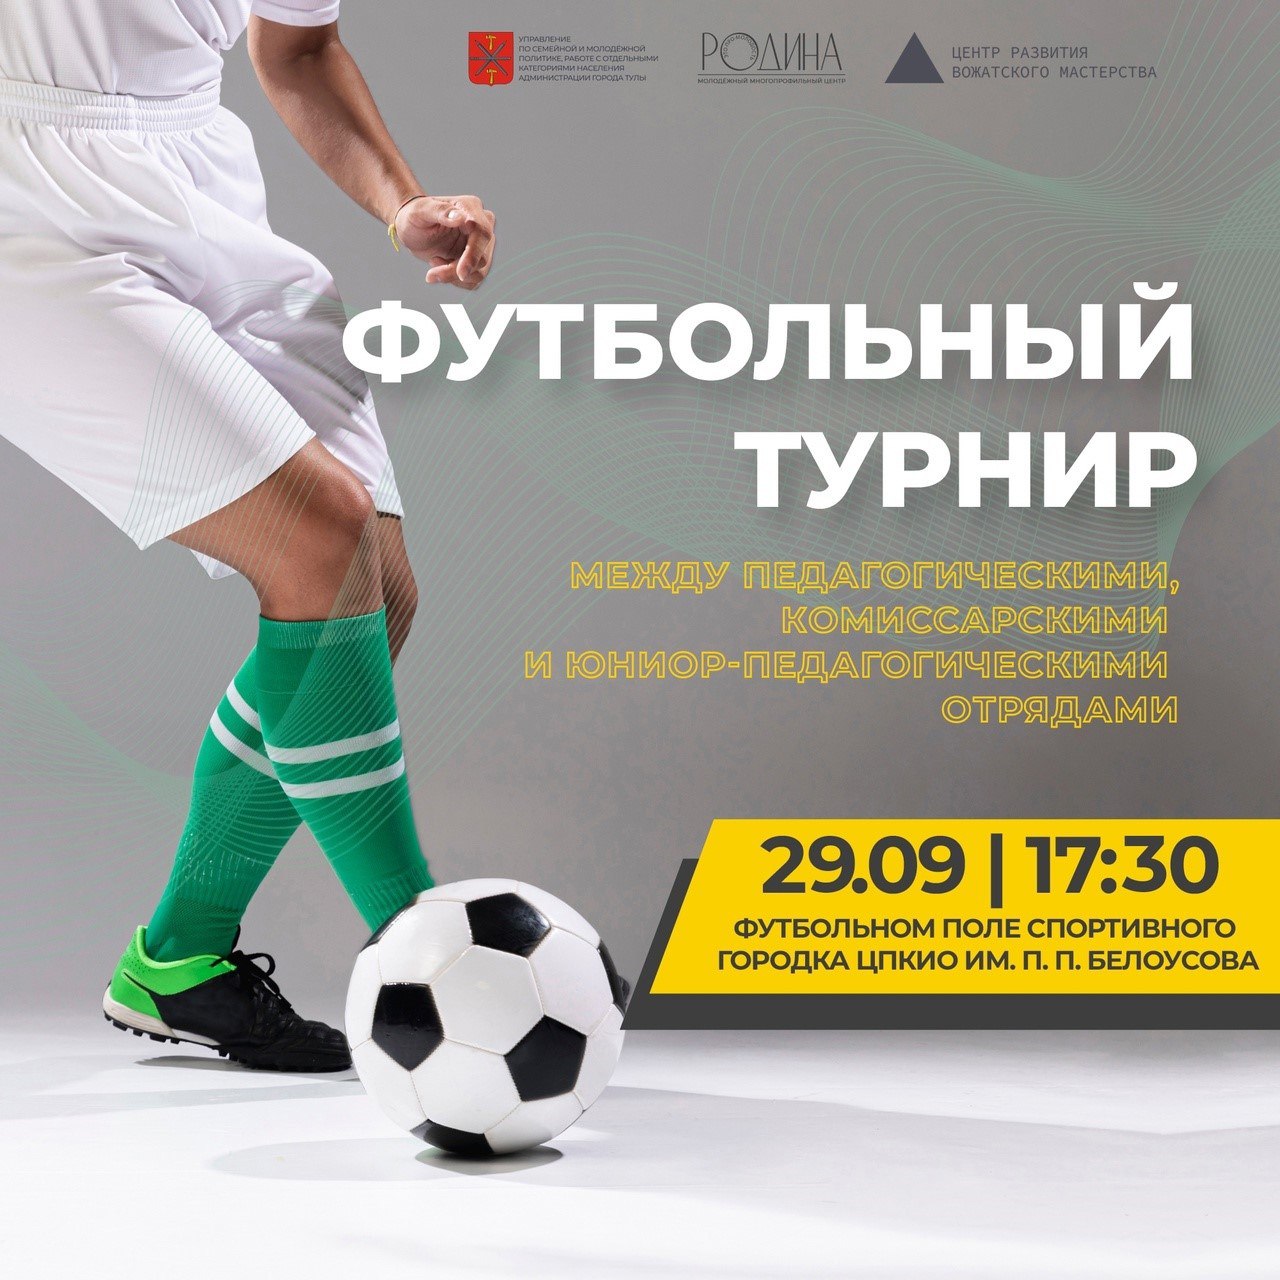 В Туле пройдет футбольный турнир между педагогическими, комиссарскими и юниор-педагогическими отрядами.